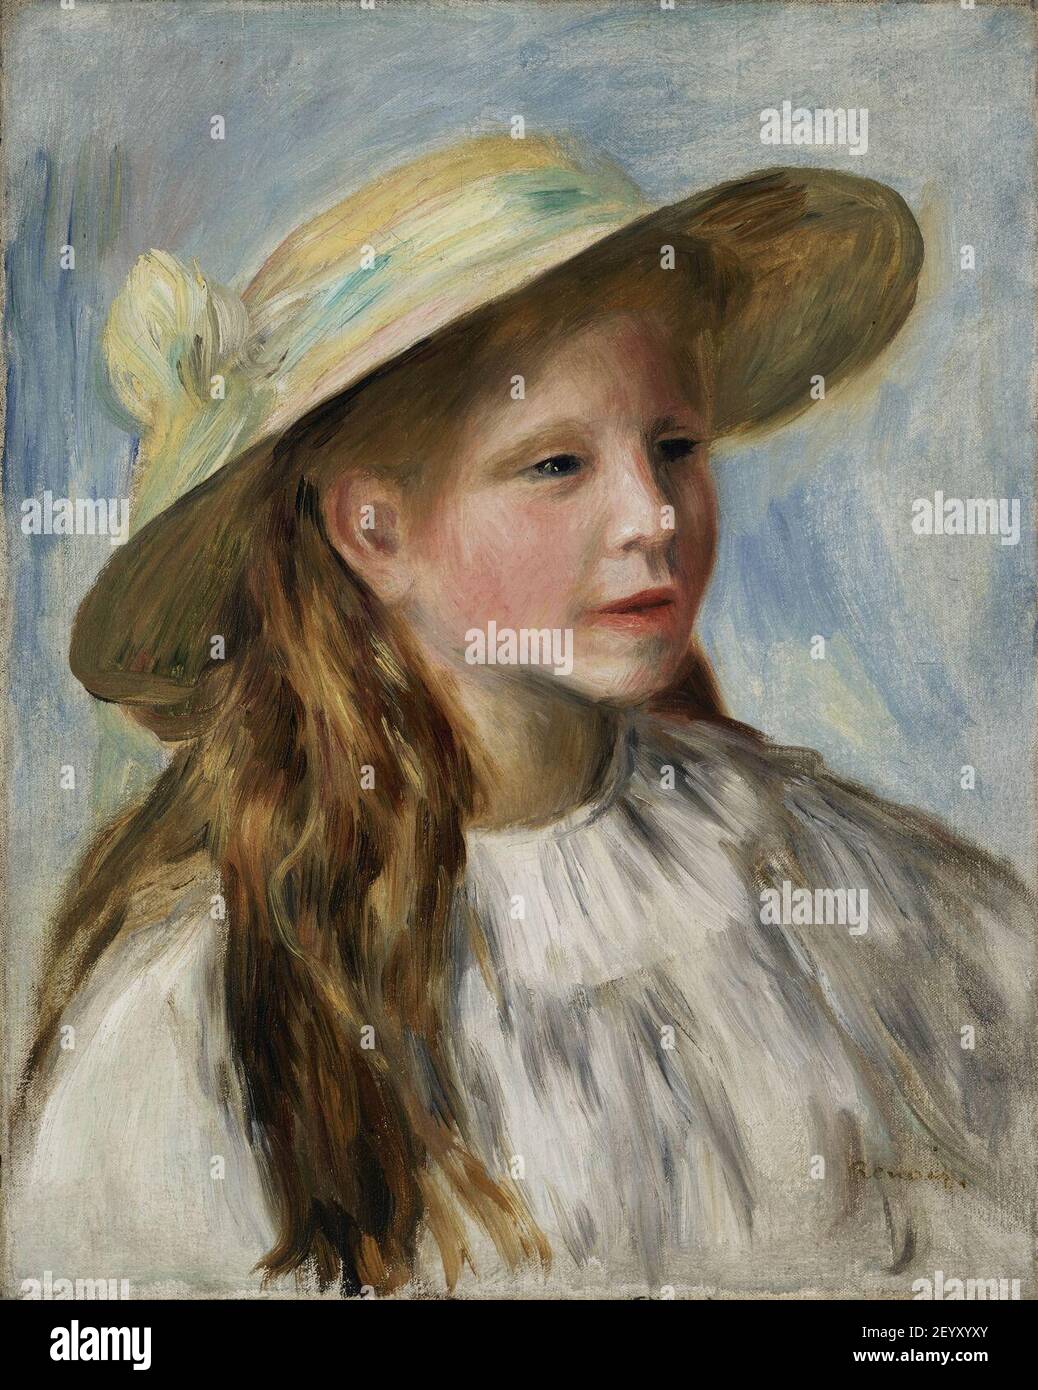 Milanuncios - Niña del sombrero azul de Renoir